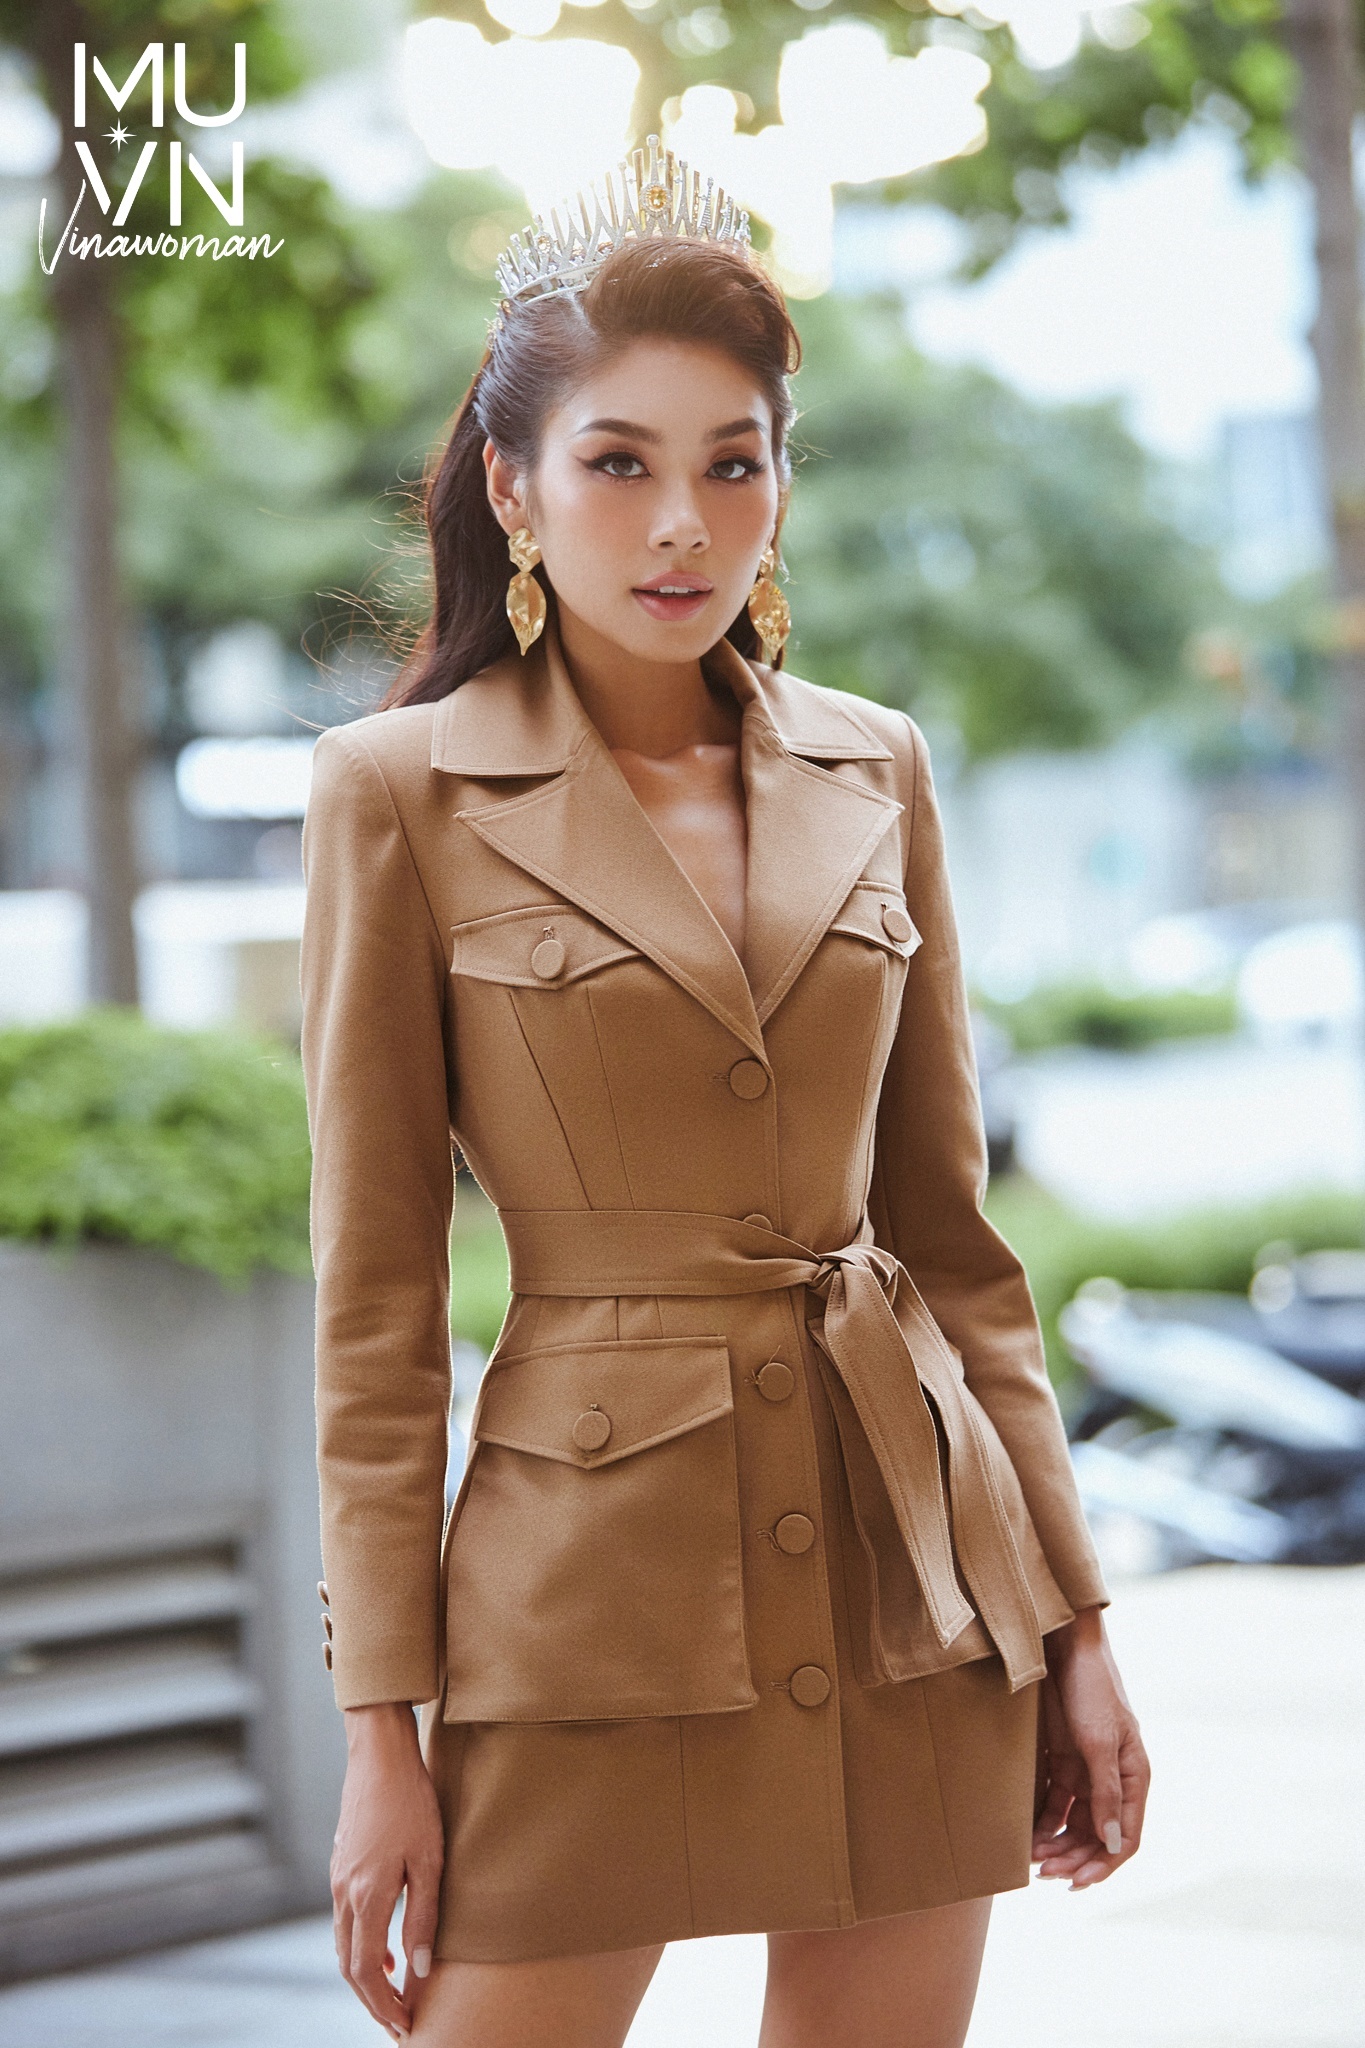 Hoa hậu Ngọc Châu đẹp sắc nét cùng loạt đầm sắc trắng tinh khôi - ảnh 20